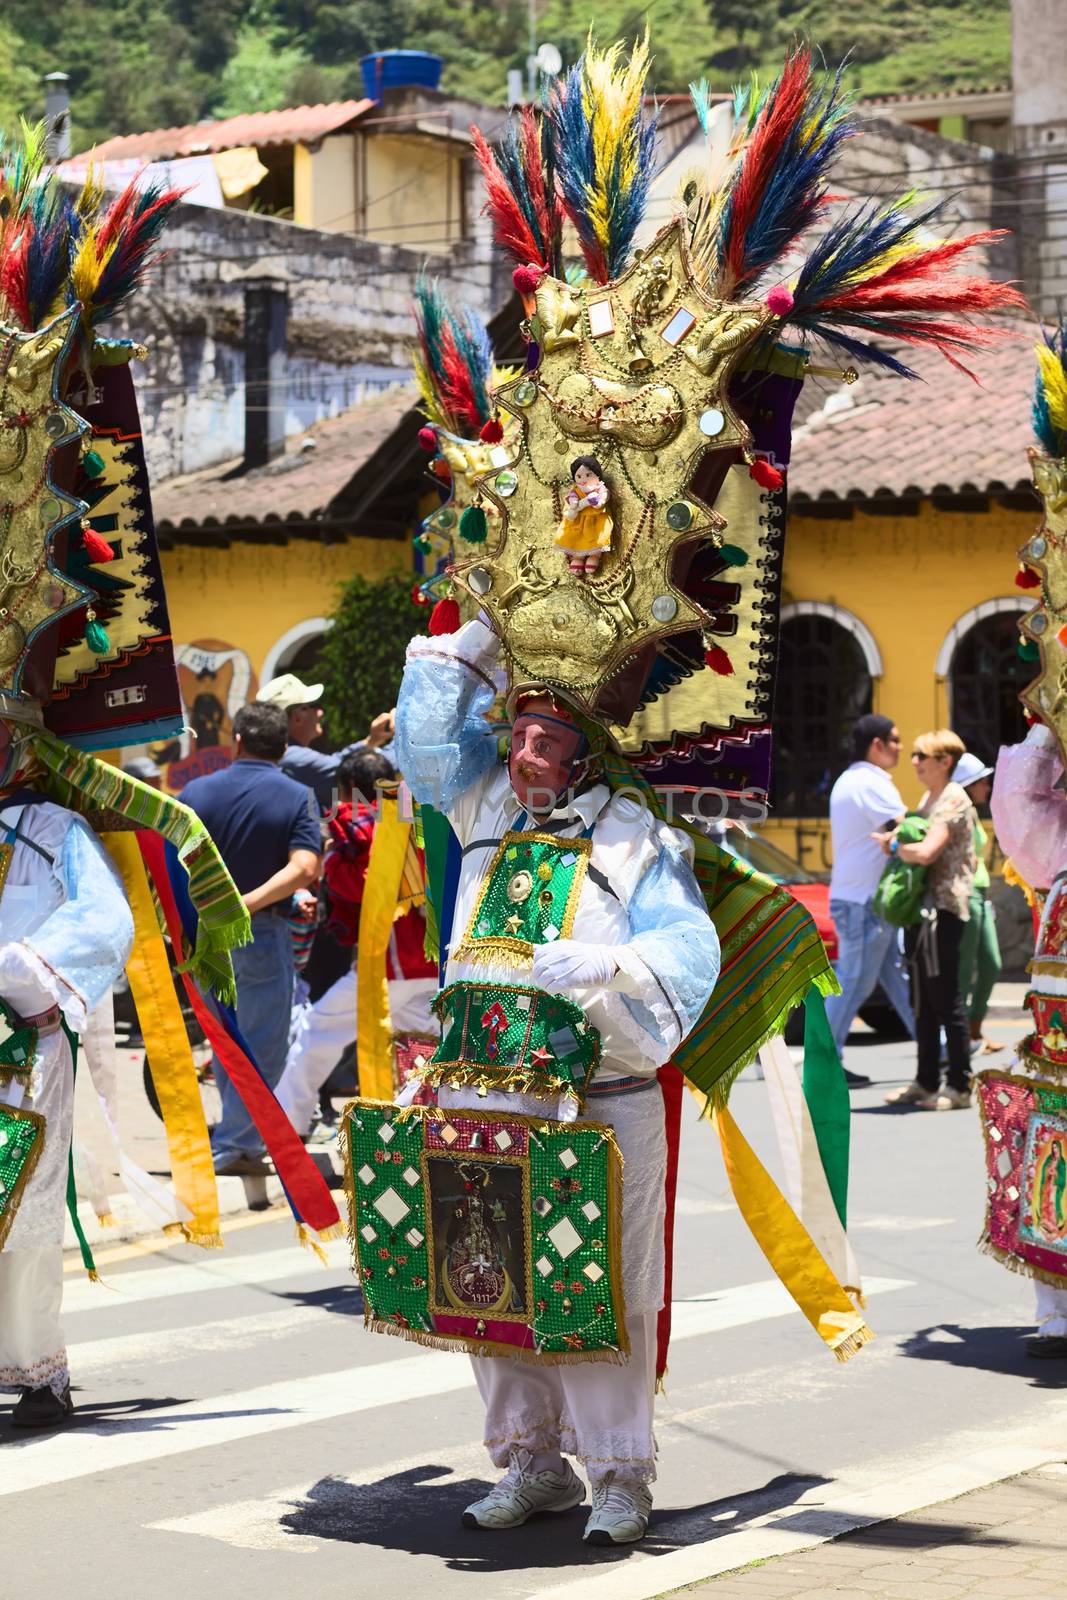 Carnival Parade in Banos, Ecuador by ildi